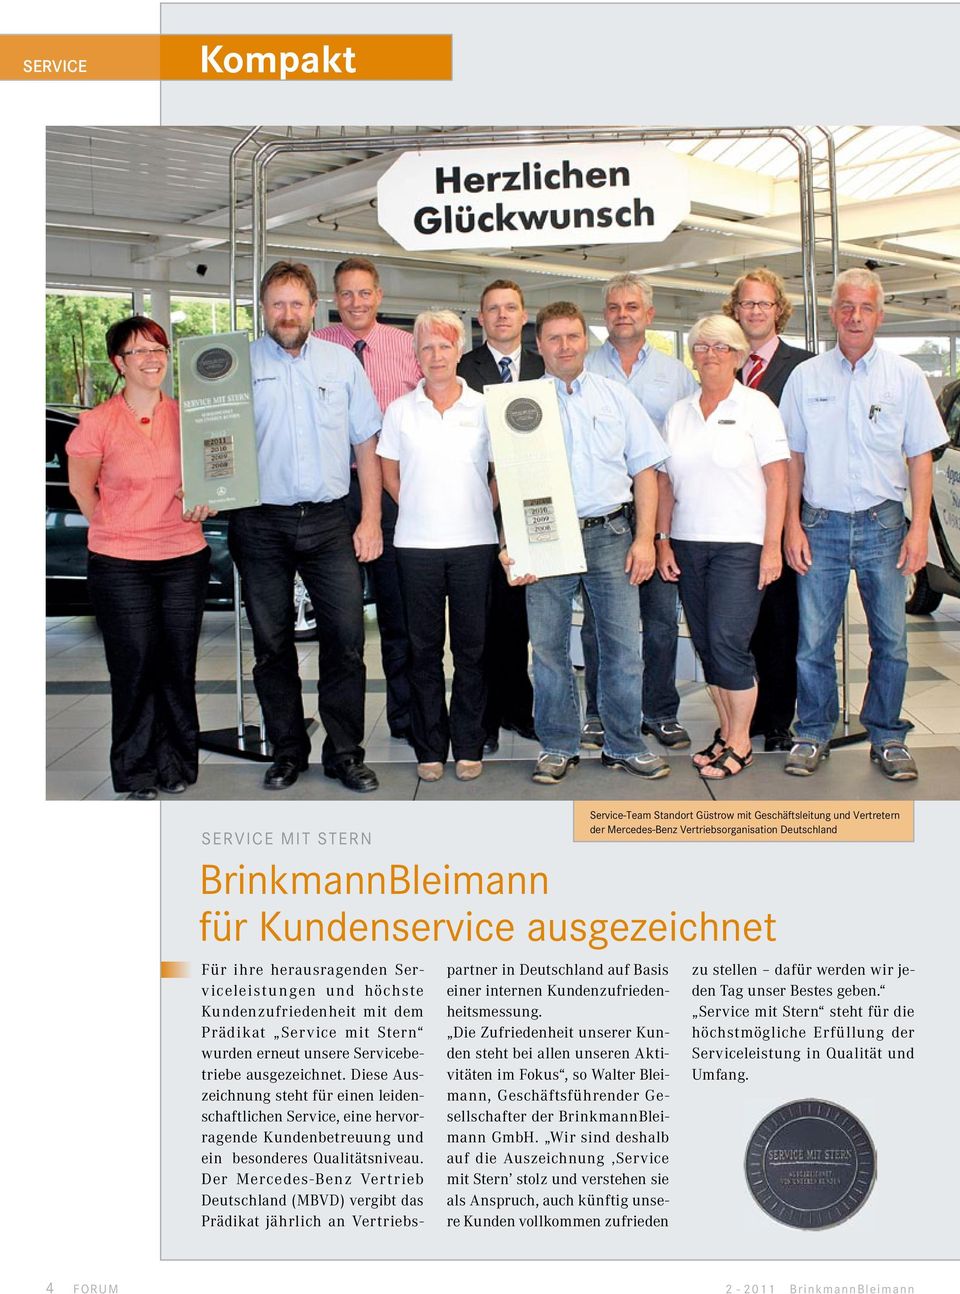 Der Mercedes-Benz Vertrieb Deutschland (MBVD) vergibt das Prädikat jährlich an Vertriebspartner in Deutschland auf Basis einer internen Kundenzufriedenheitsmessung.